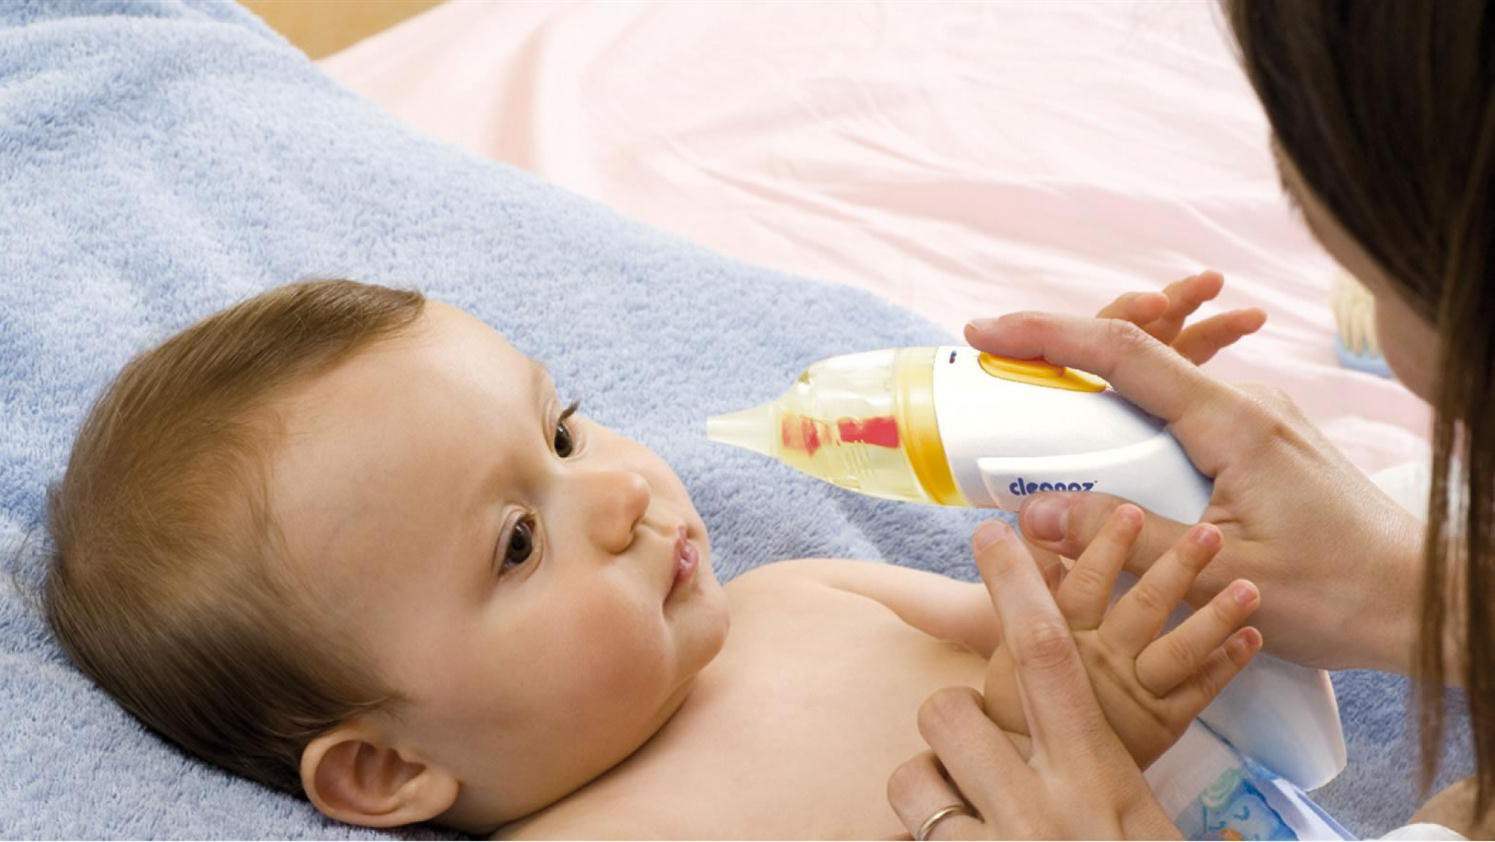 Vệ sinh mũi thường xuyên để bé để loại bỏ vi khuẩn và giúp bé dễ thở hơn